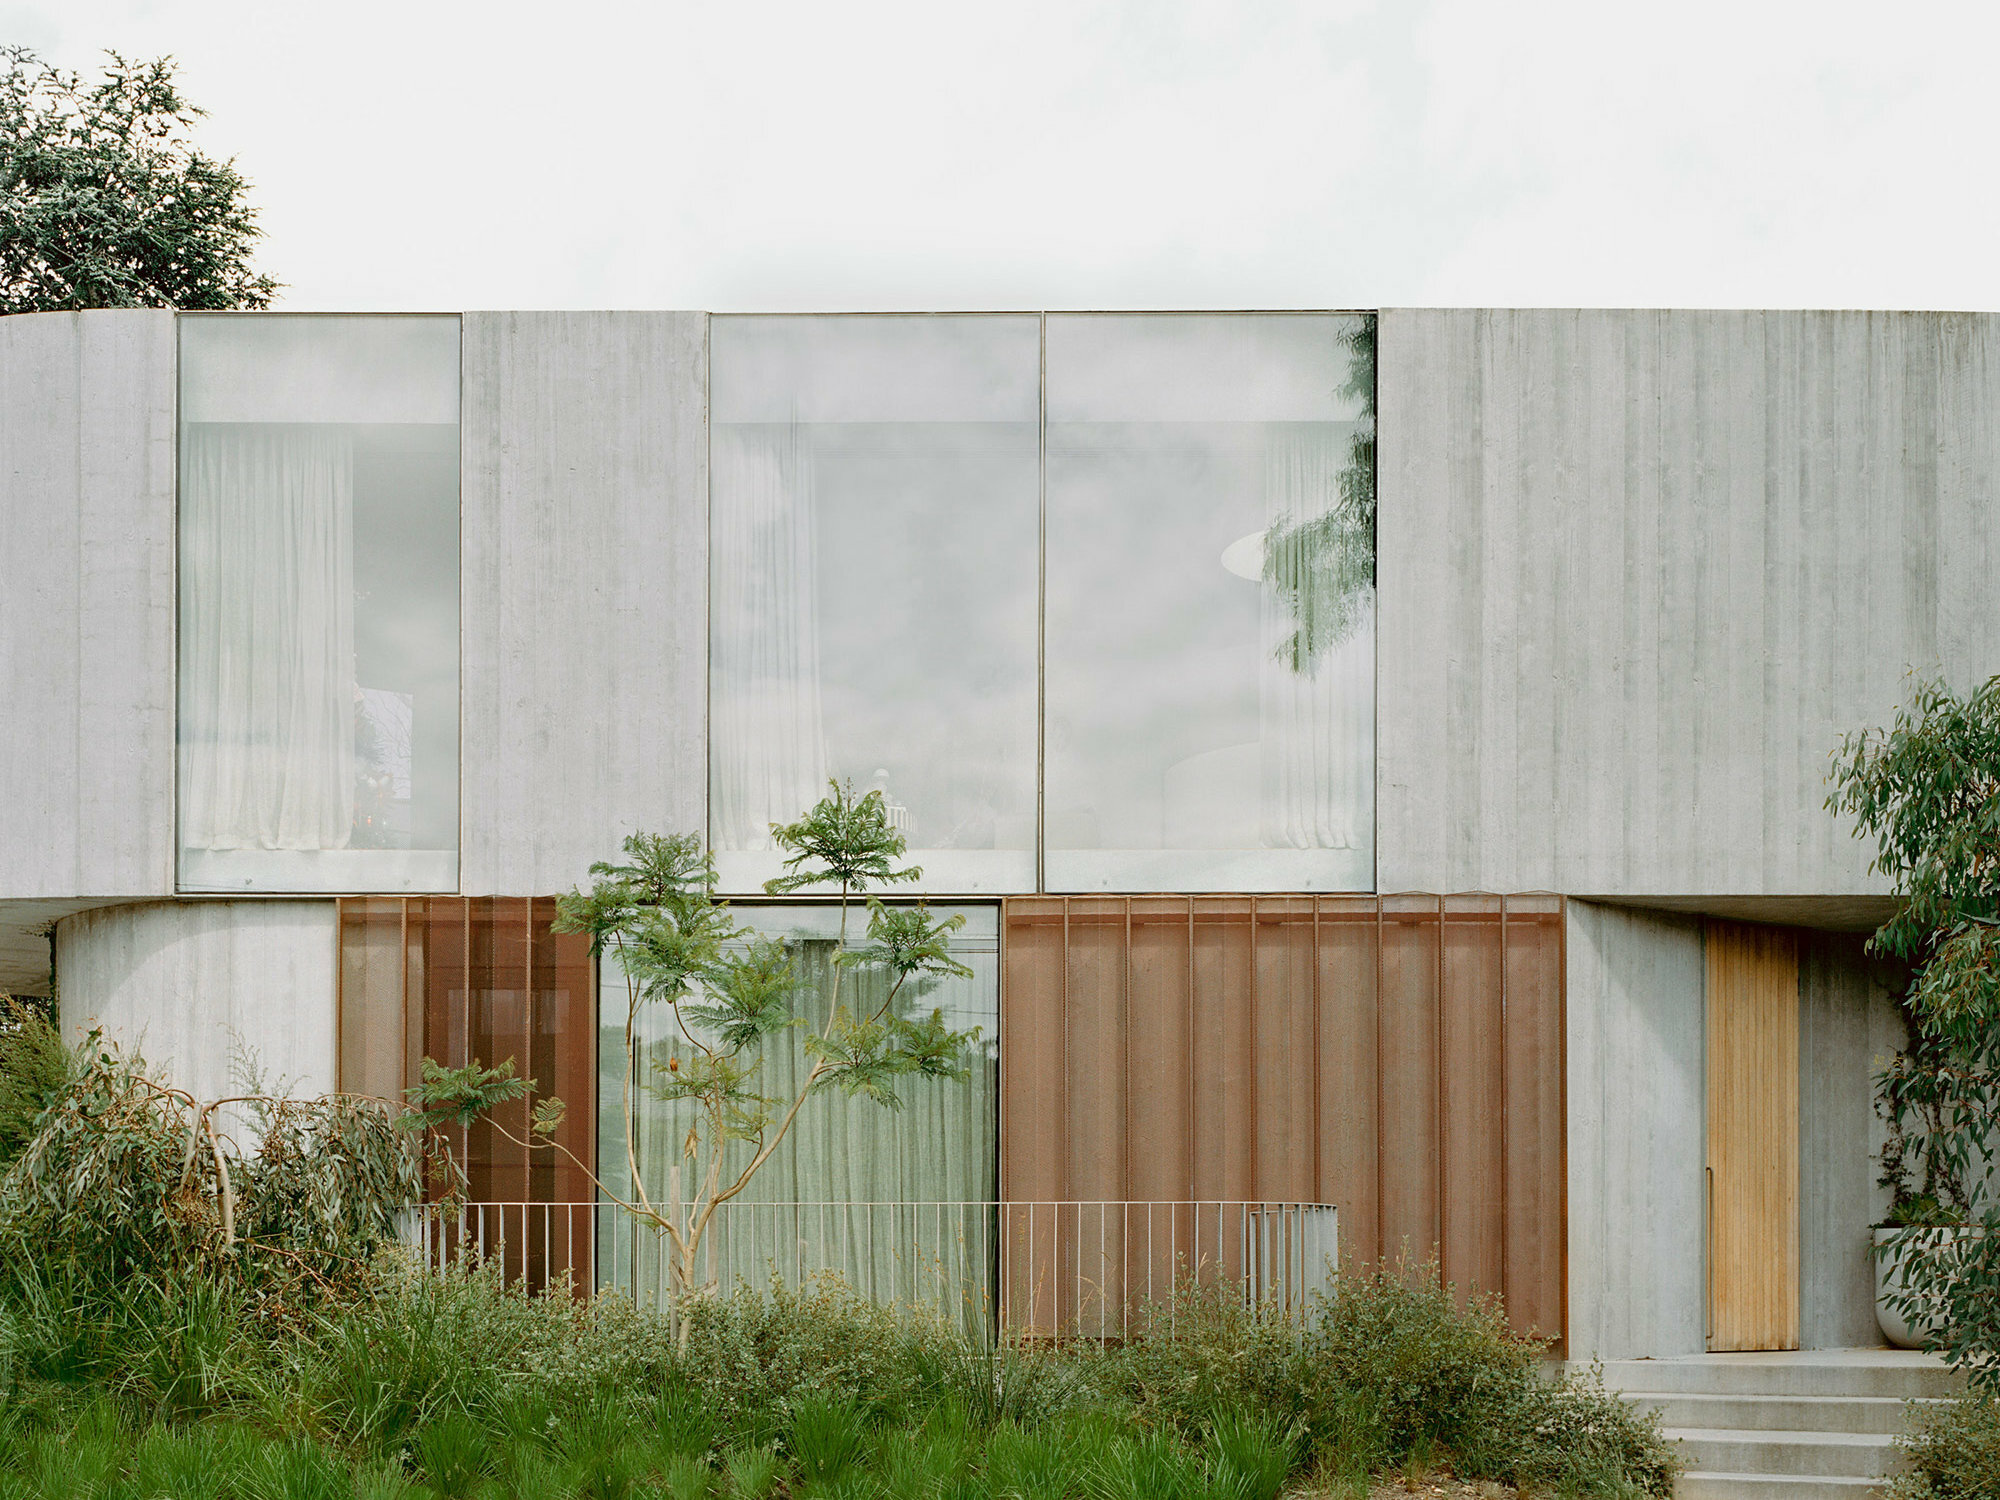 Die raue Struktur von Sichtbeton wechselt sich beim Wohnhausprojekt im australischen Kew mit weicher gezeichneten oder warmen Oberflächen an der Fassade ab.